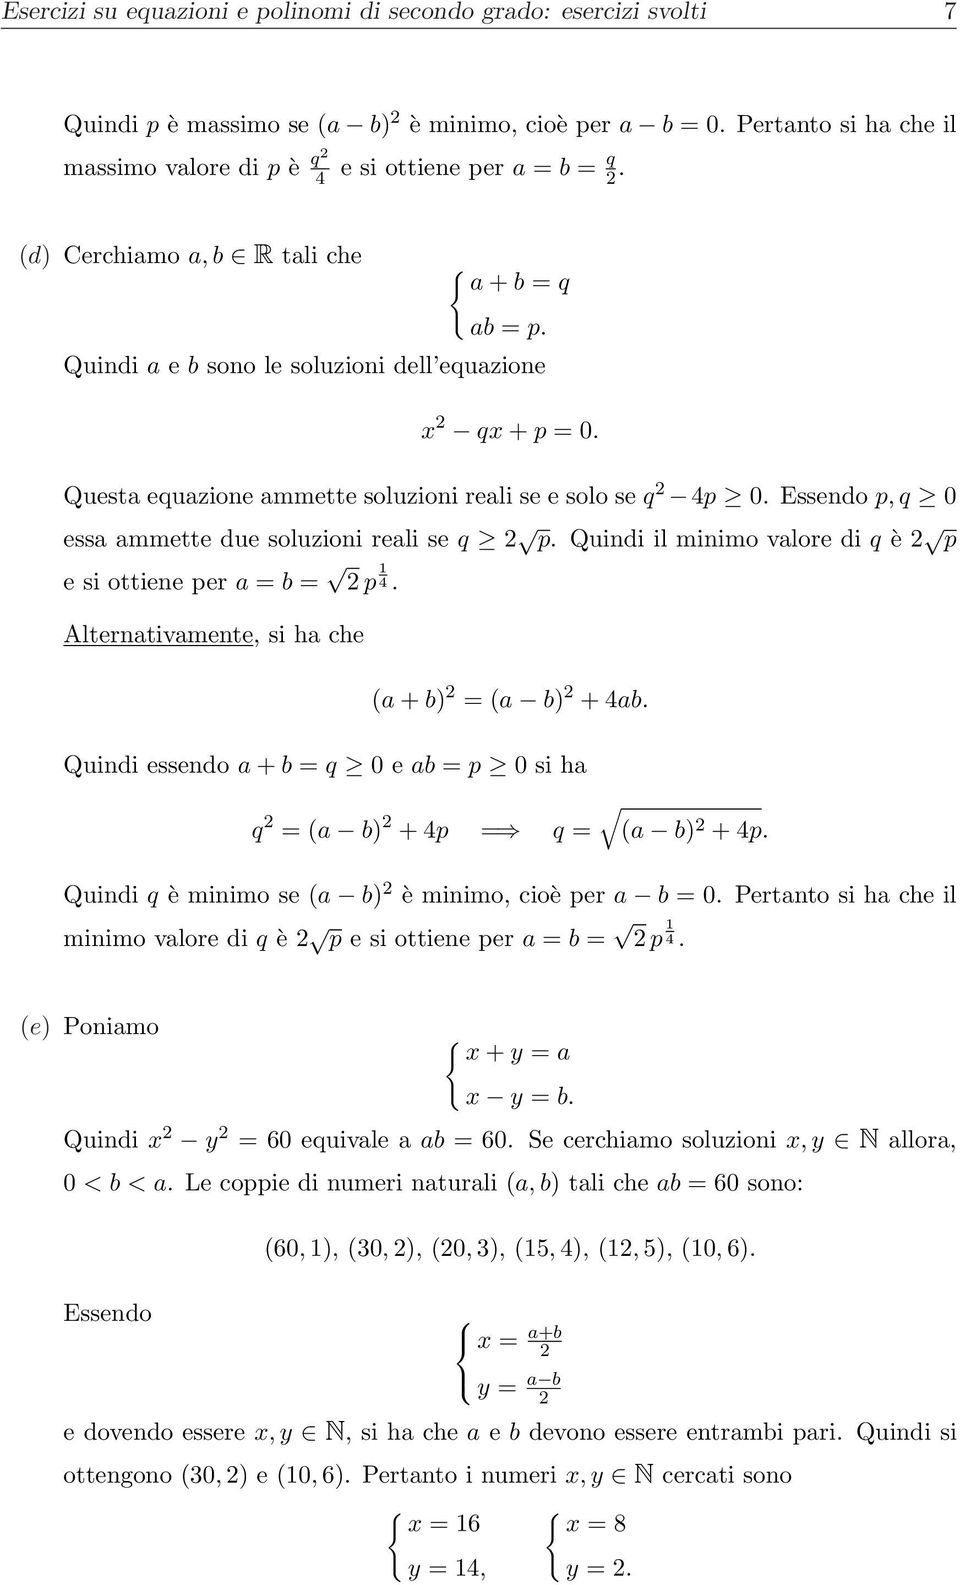 Essendo p, q 0 essa ammette due soluzioni reali se q p. Quindi il minimo valore di q è p e si ottiene per a = b = p 4. Alternativamente, si ha che (a + b) = (a b) + 4ab.